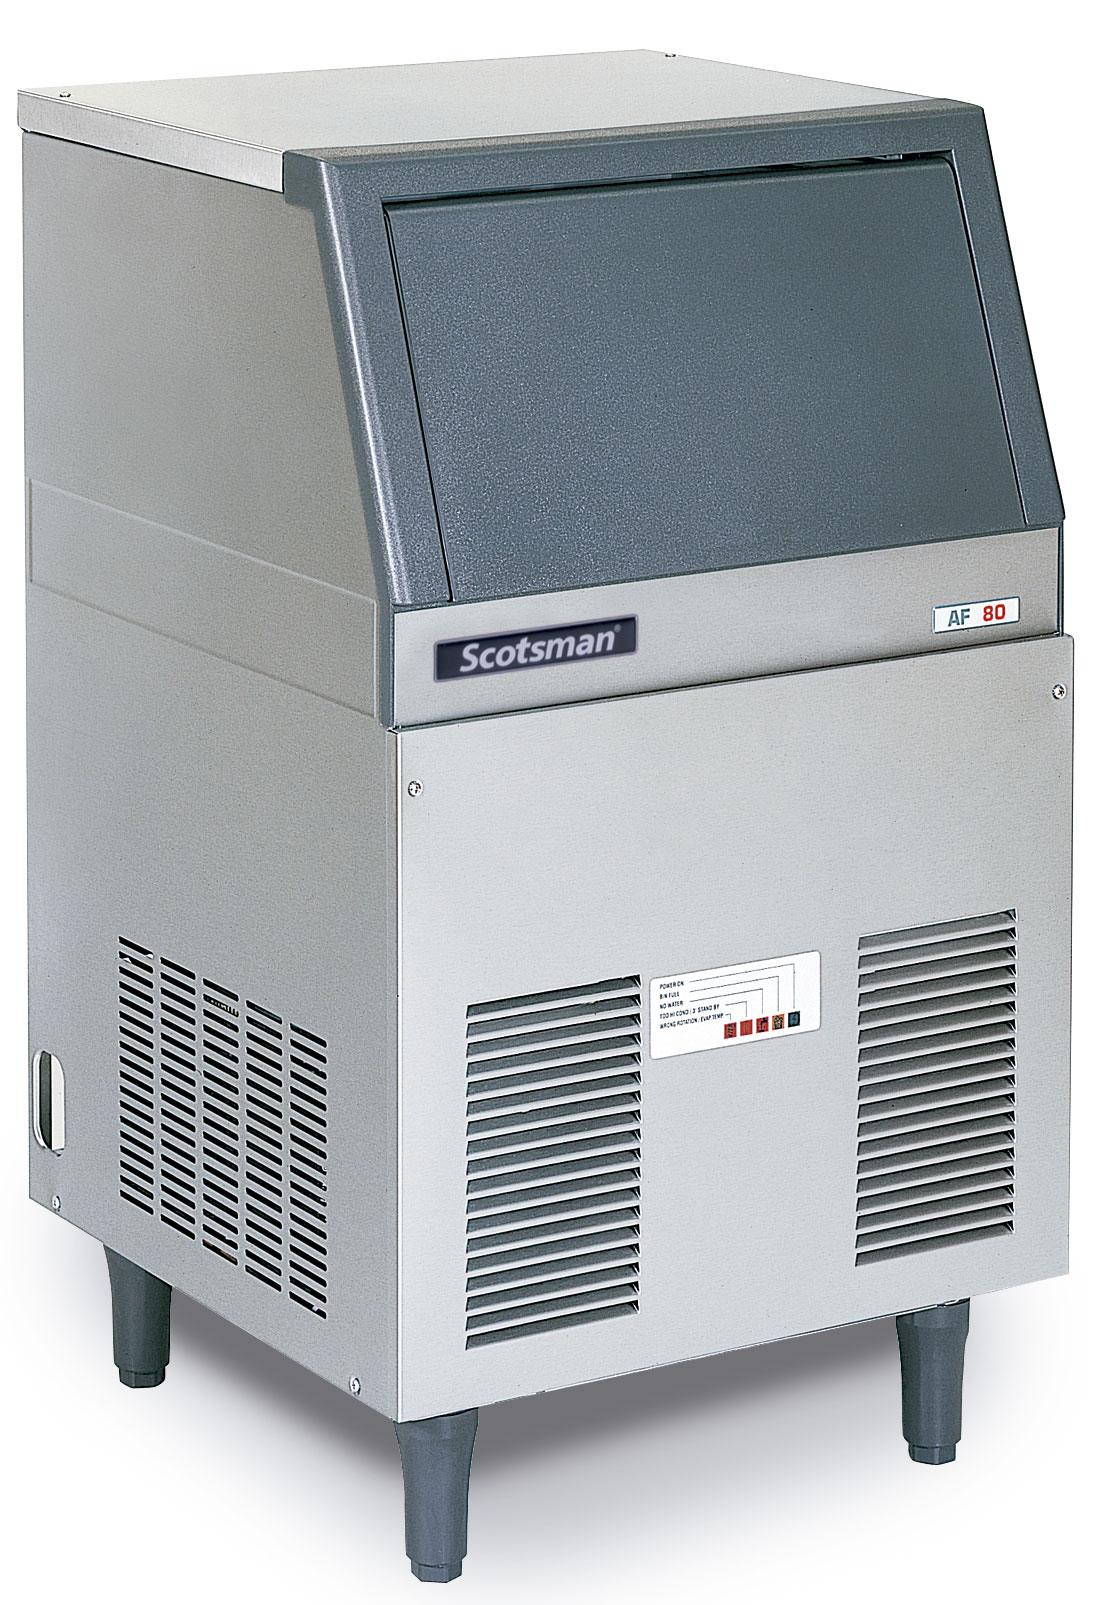 Máquina de hielo AF. SCOTSMAN. Modelo: AF103AS. Refrigeración: Por aire. Producción máx. 24h (Kg): 108. Almacenaje (Kg): 30. Dim. AlxAnxPr (mm): 592x1126x622